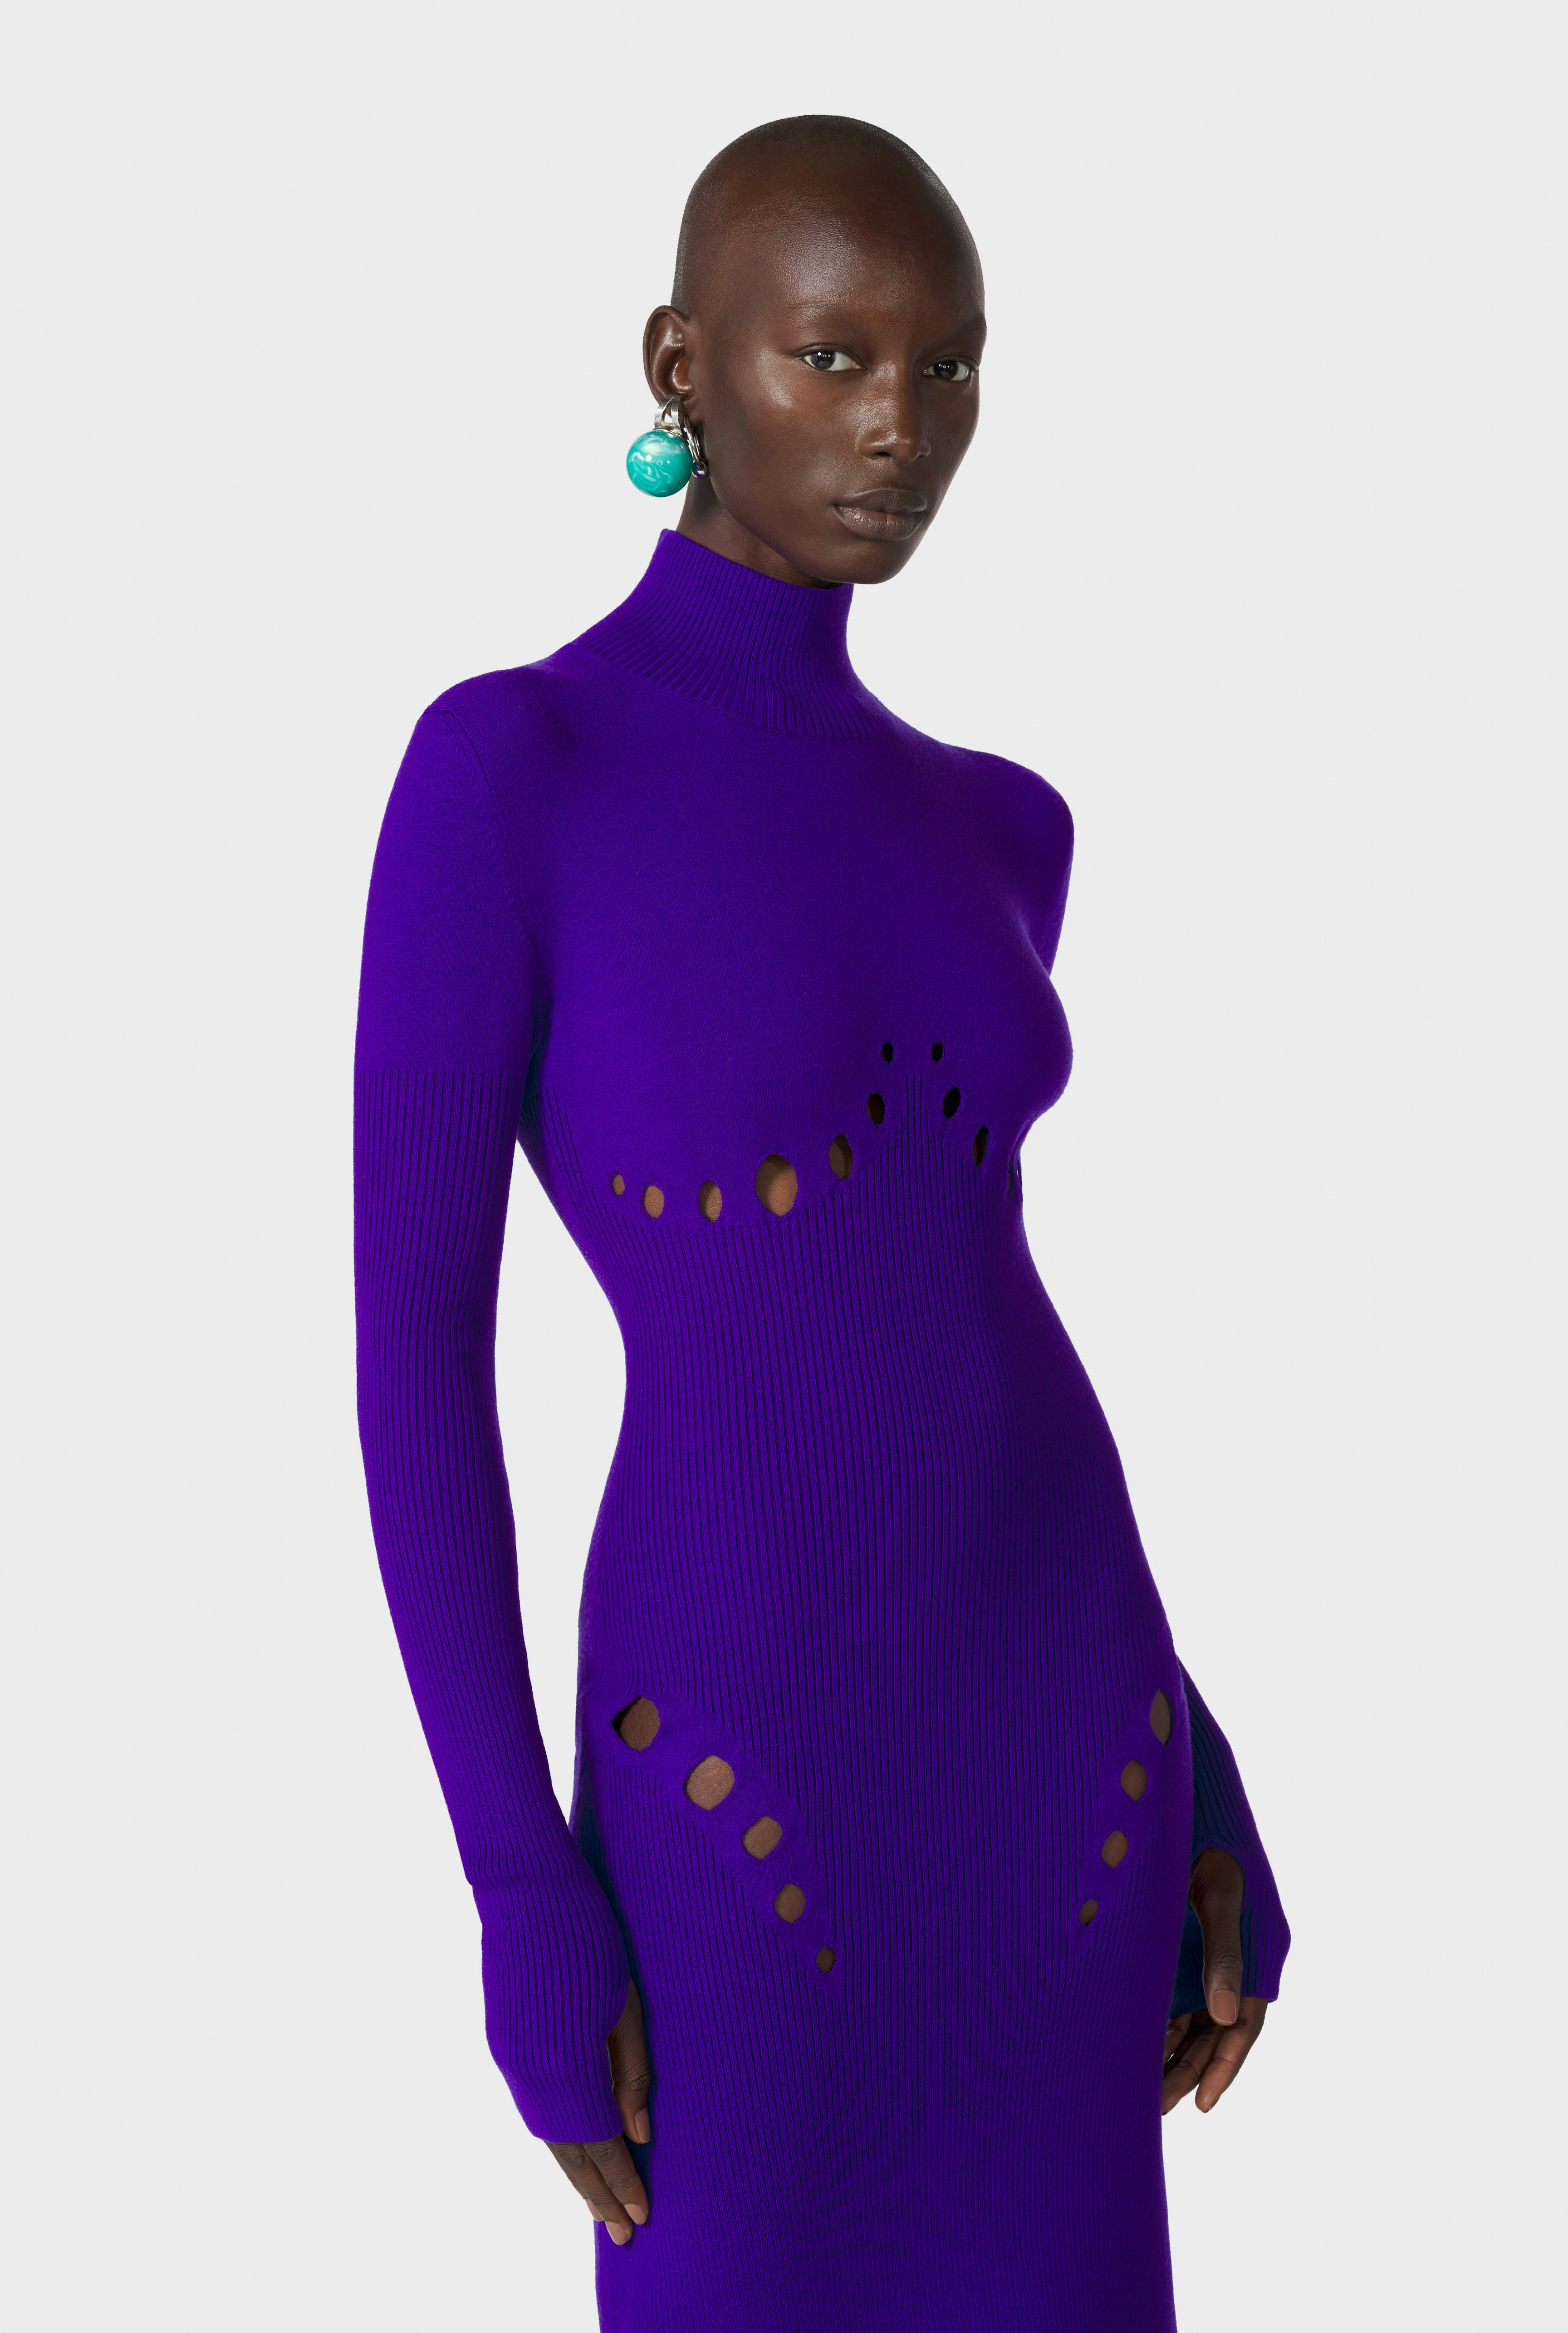 The Purple Openworked Knit Dress Jean Paul Gaultier